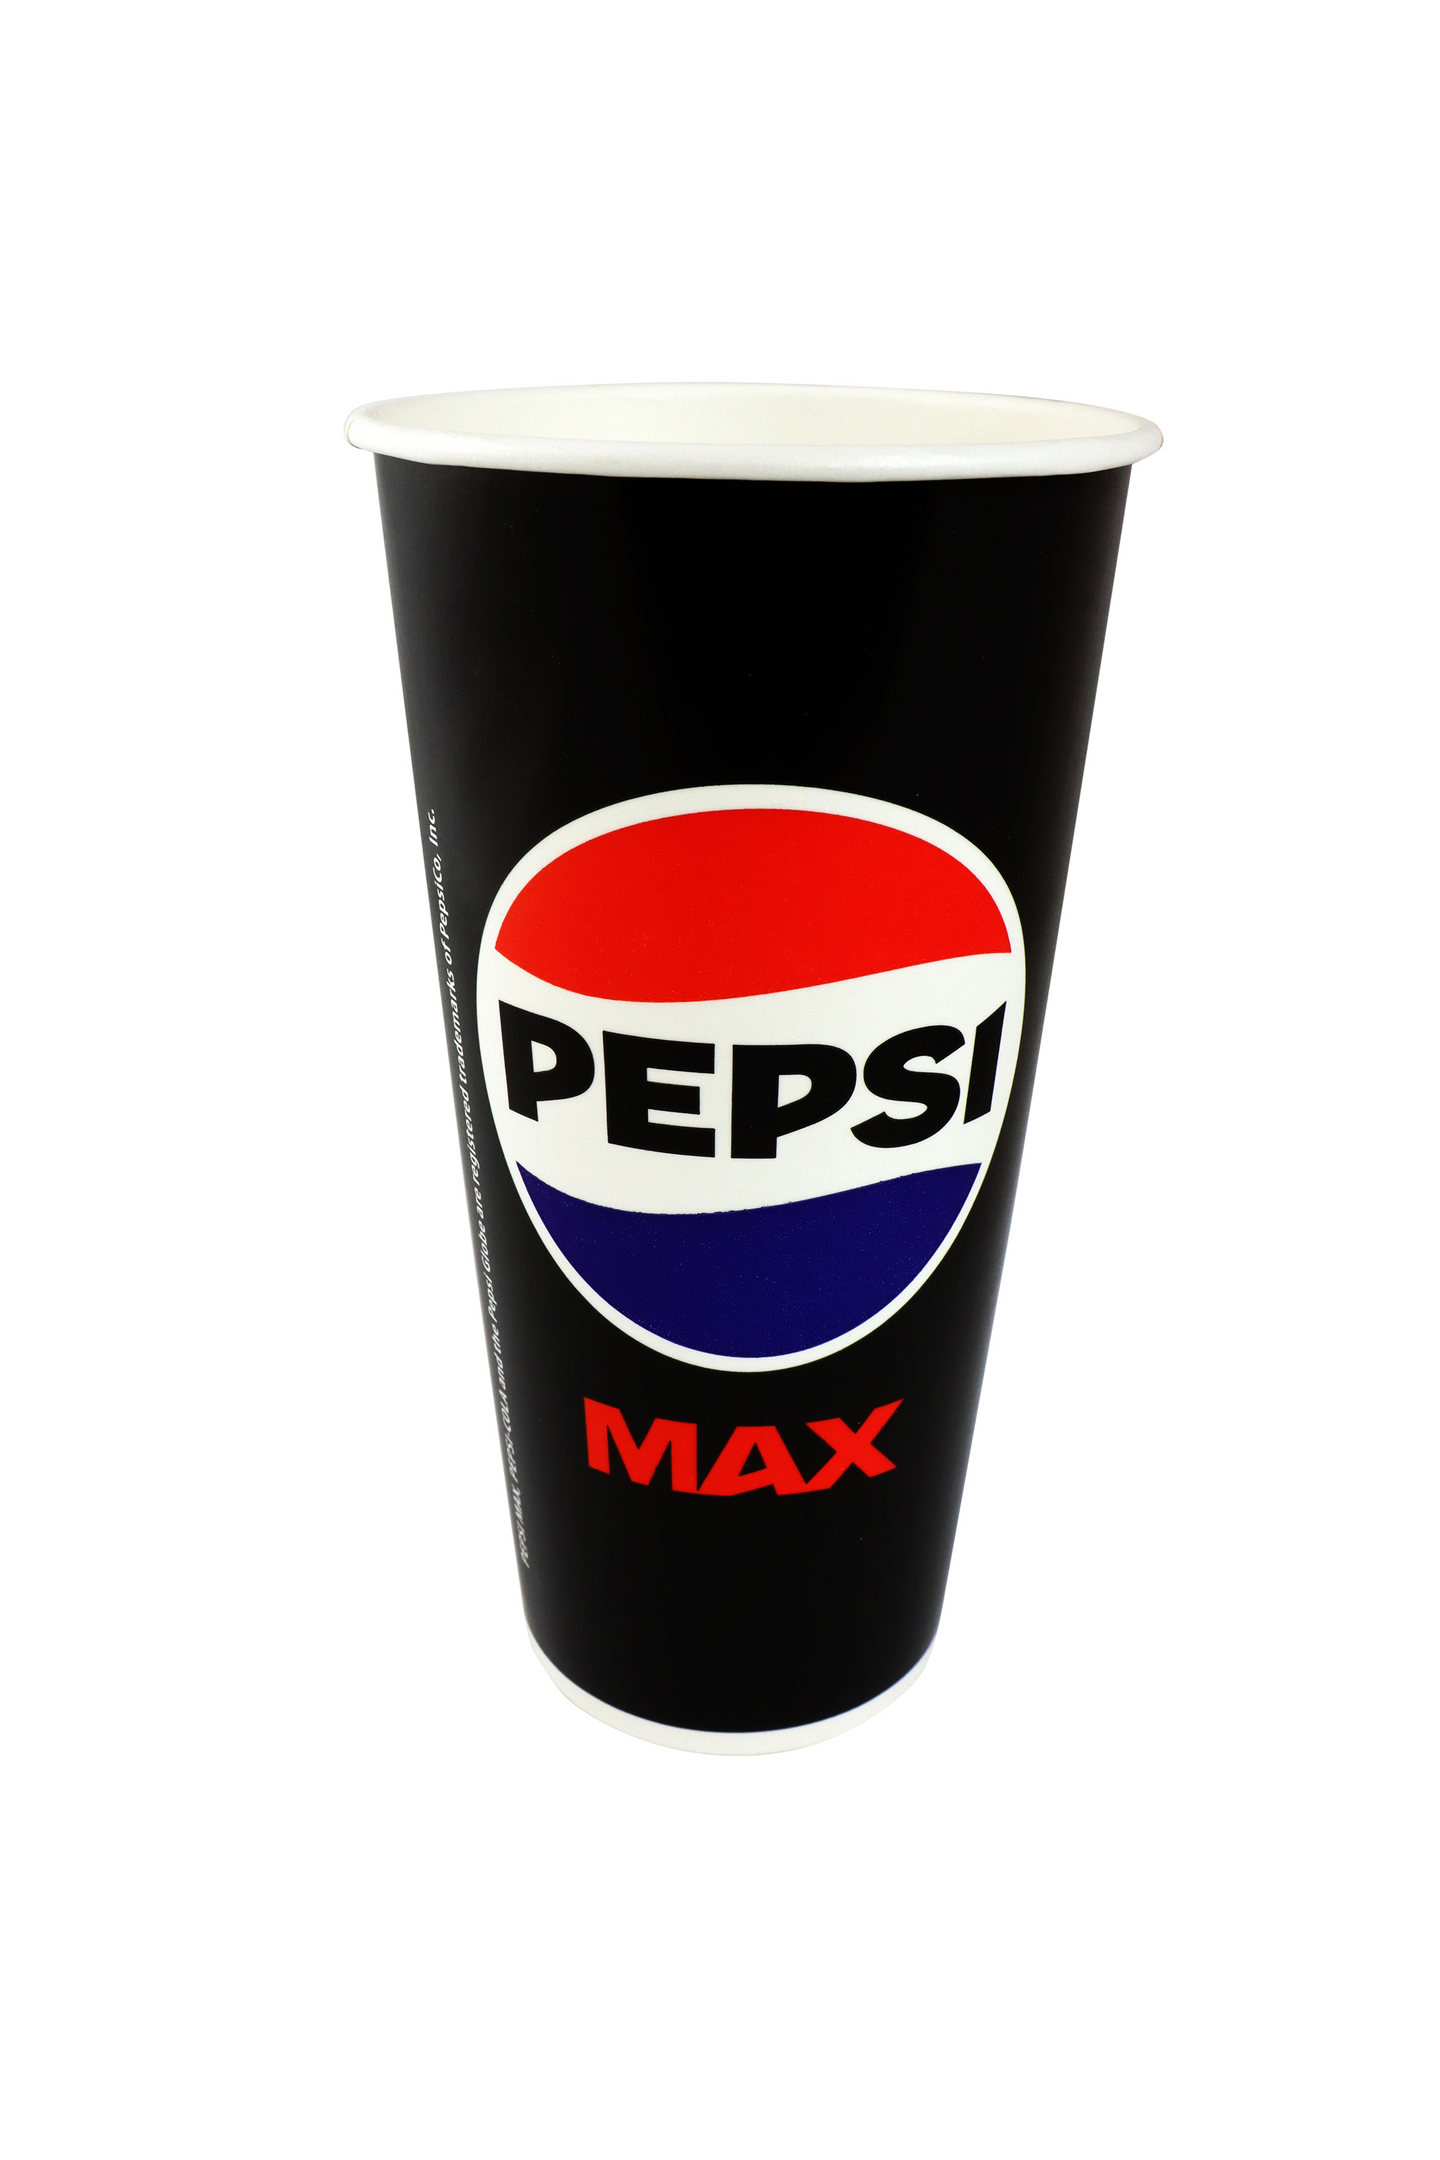 Huhtamaki Pepsi kylmäjuomapikari 500ml 40kpl